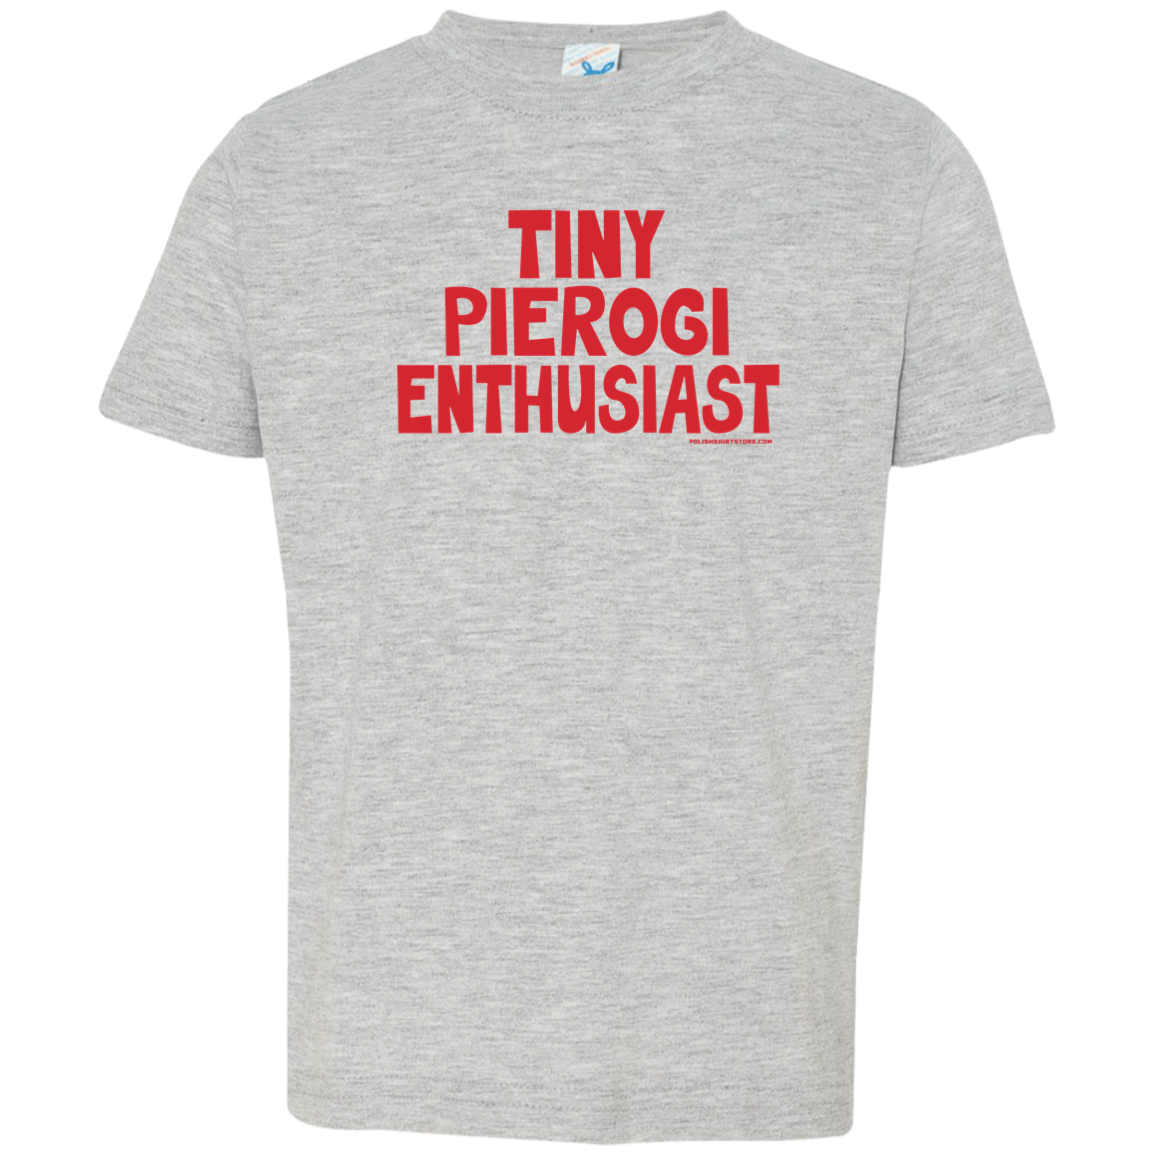 Tiny Pierogi Enthusiast Infant & Toddler T-Shirt Apparel CustomCat Toddler T-Shirt Heather Grey 2T